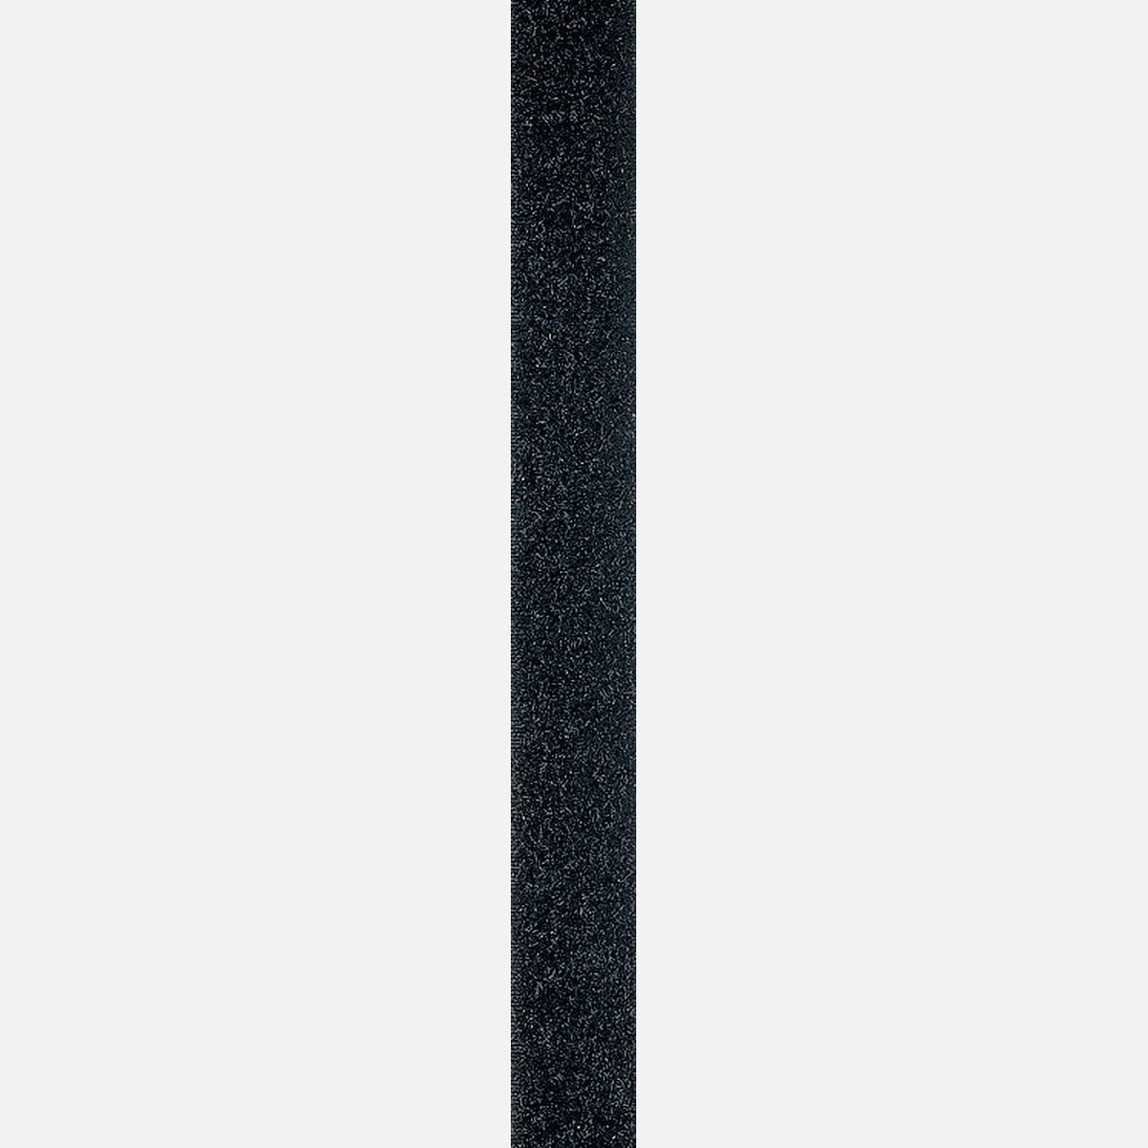    Stabilit Cırt Bant 20mm Siyah 